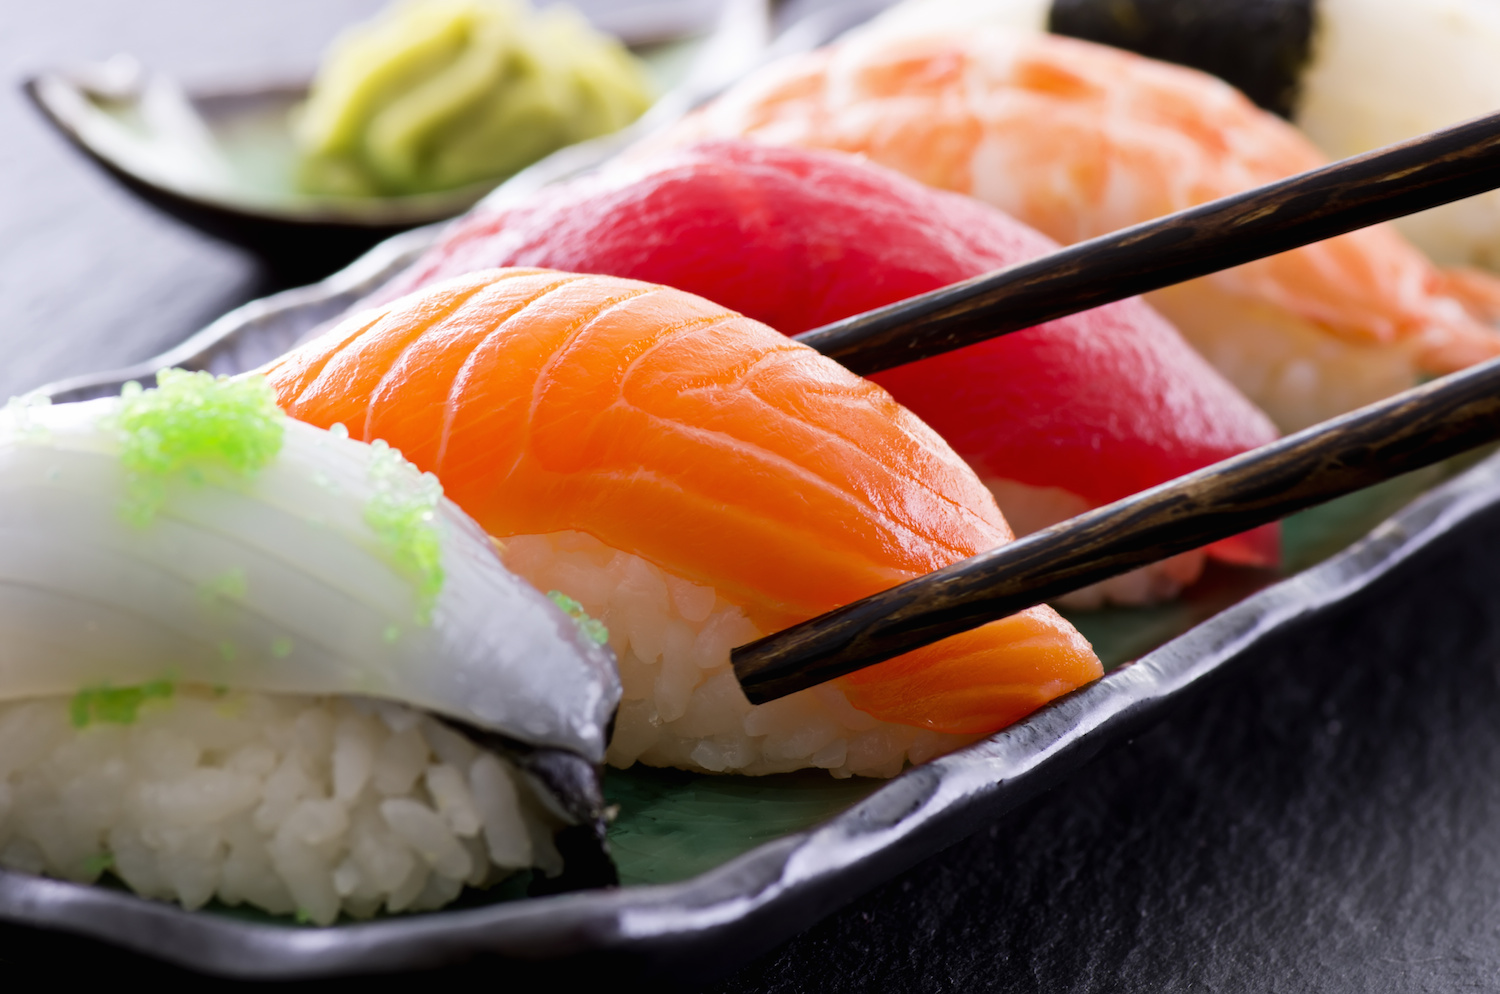 sushi.hu